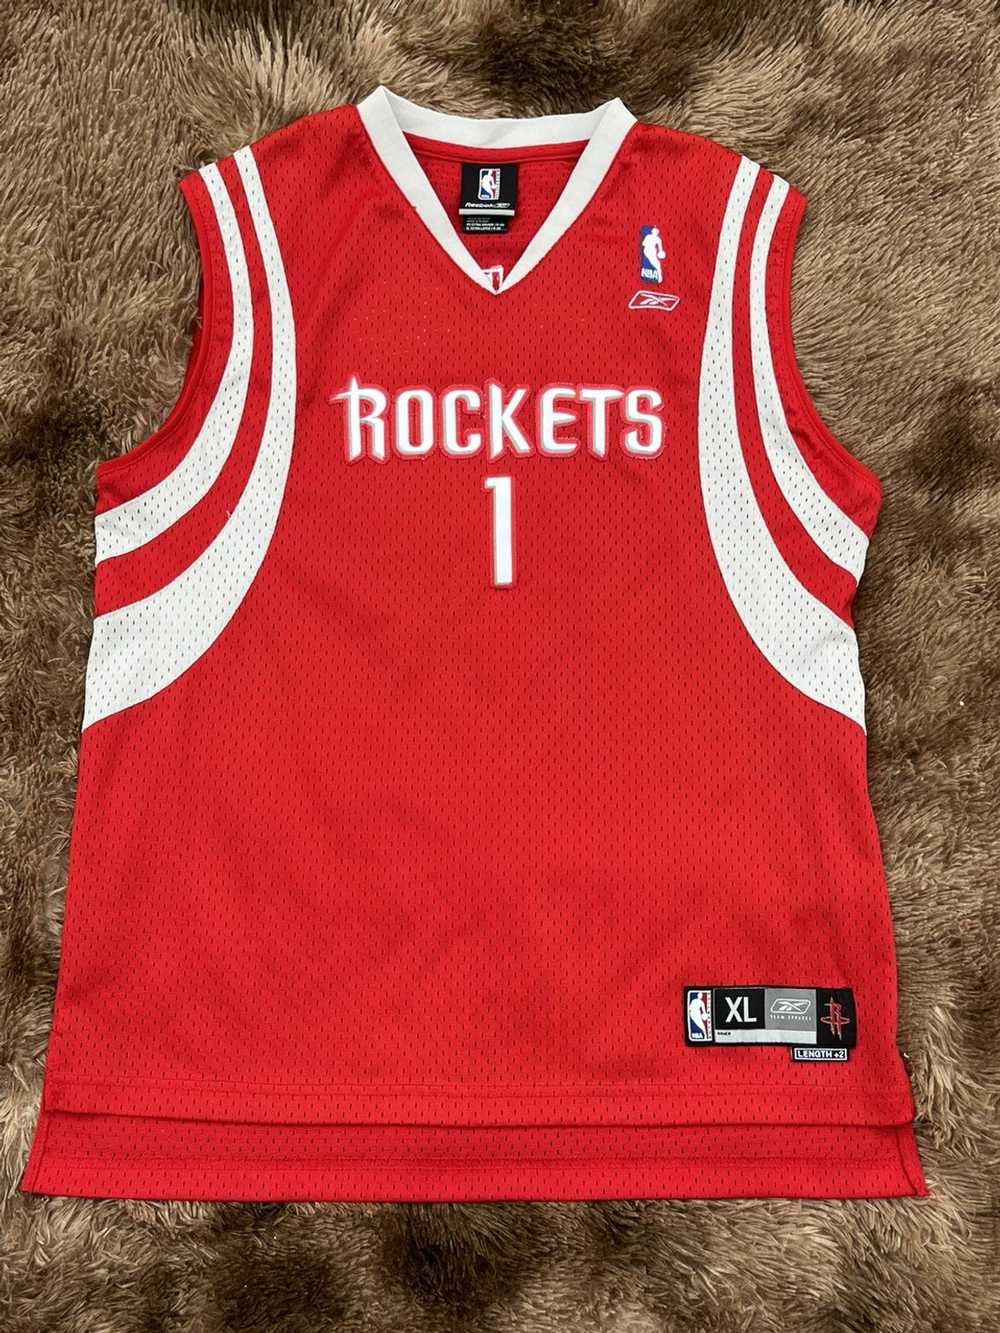 NBA × Reebok Tracy McGrady Stitched reebok jersey - image 1